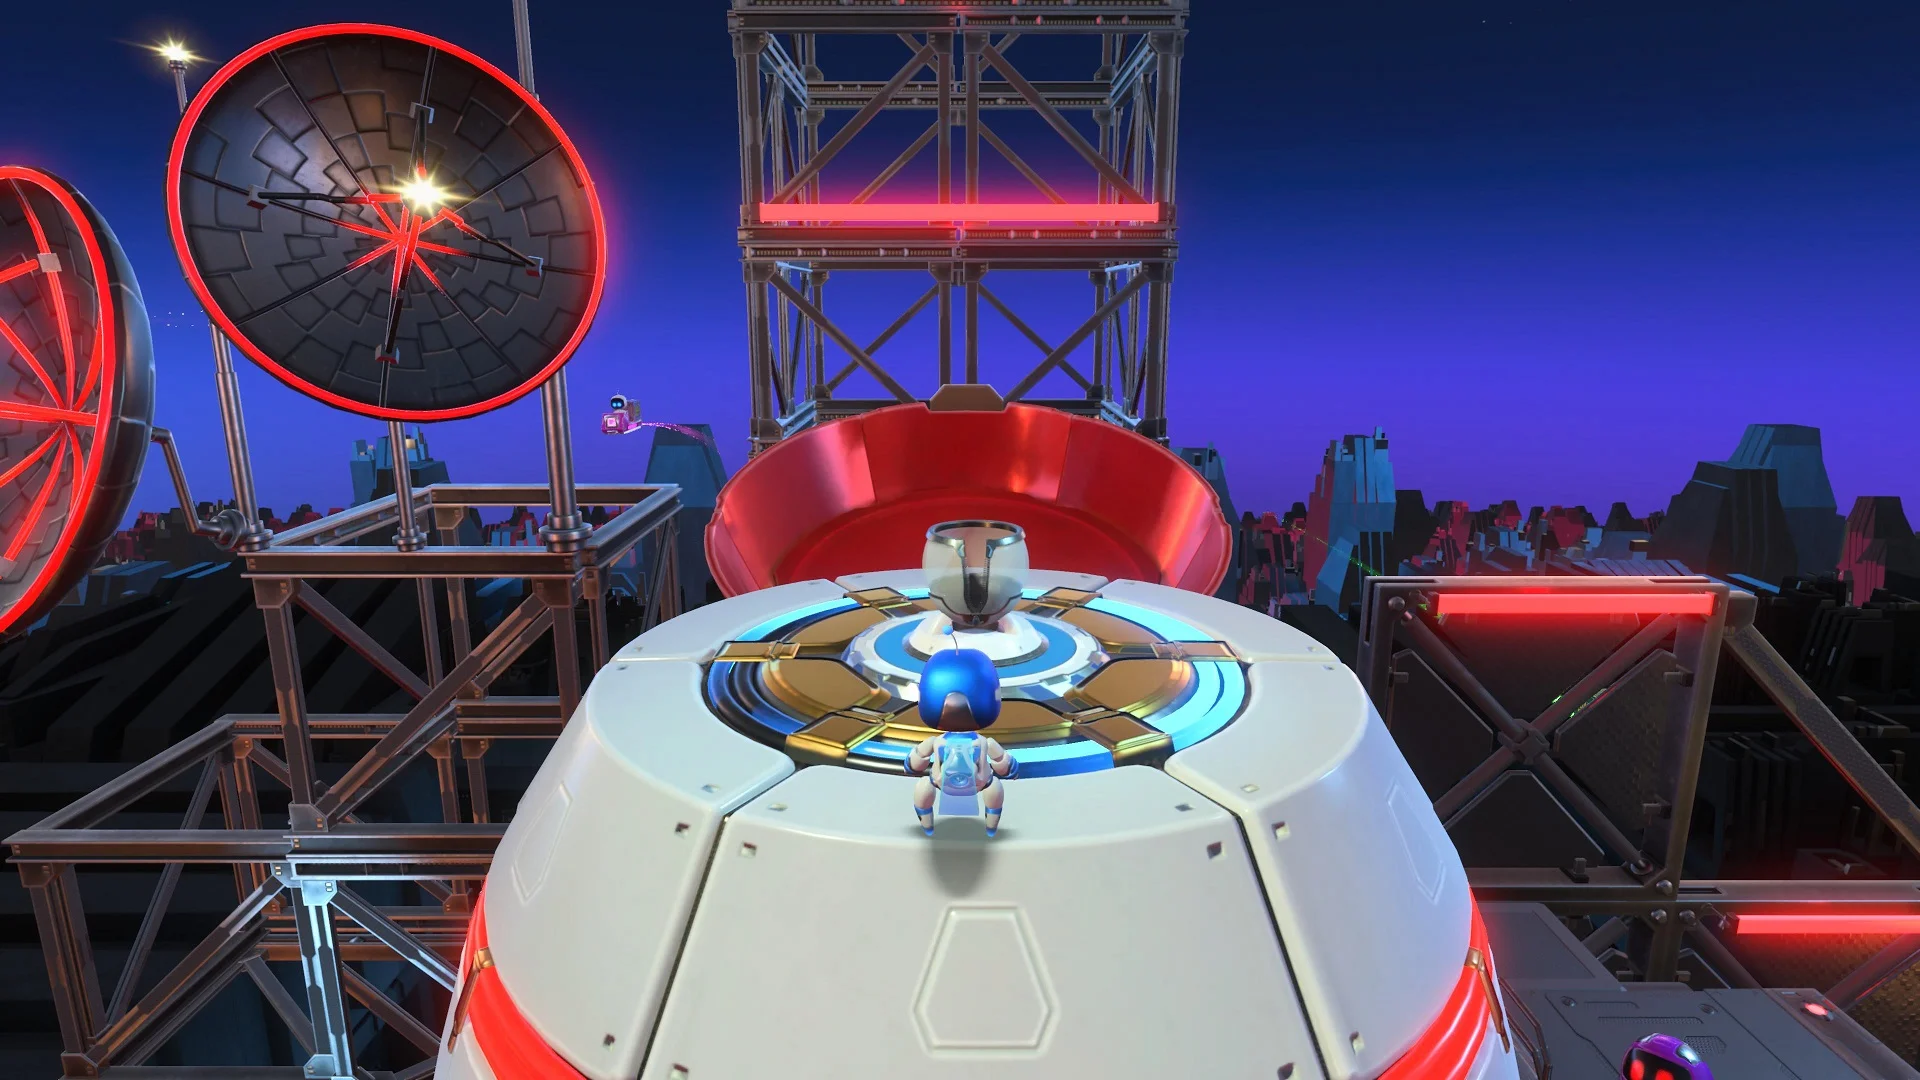 Галерея. 40 скриншотов из главных некстген-игр для PlayStation 5 - фото 4